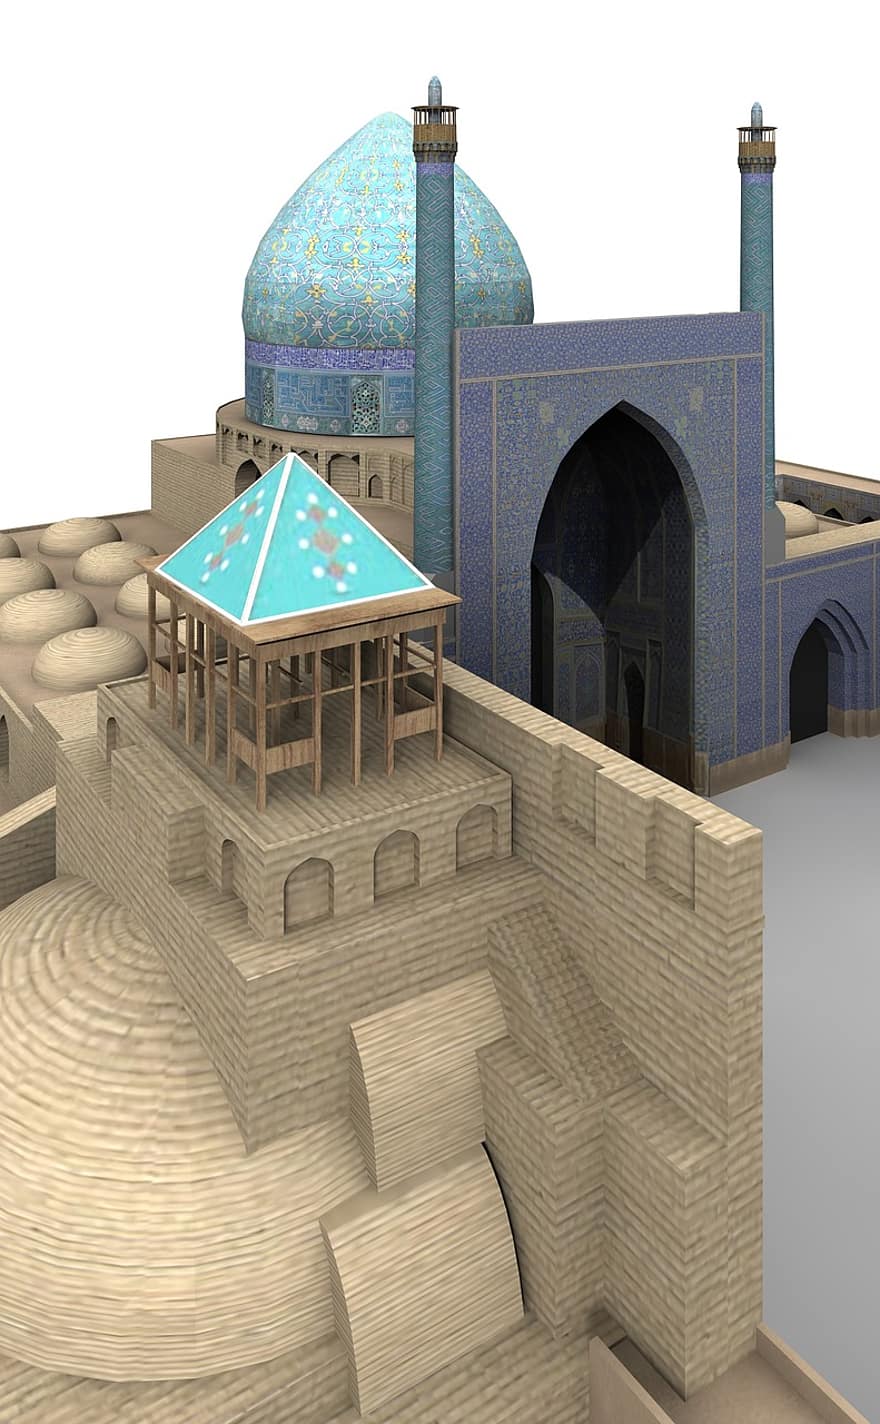 مسجد الملك ، أصفهان ، إيران ، بناء ، الأماكن ذات الأهمية ، تاريخيا ، سياح ، جاذبية ، معلم معروف ، مظهر زائف ، السفر